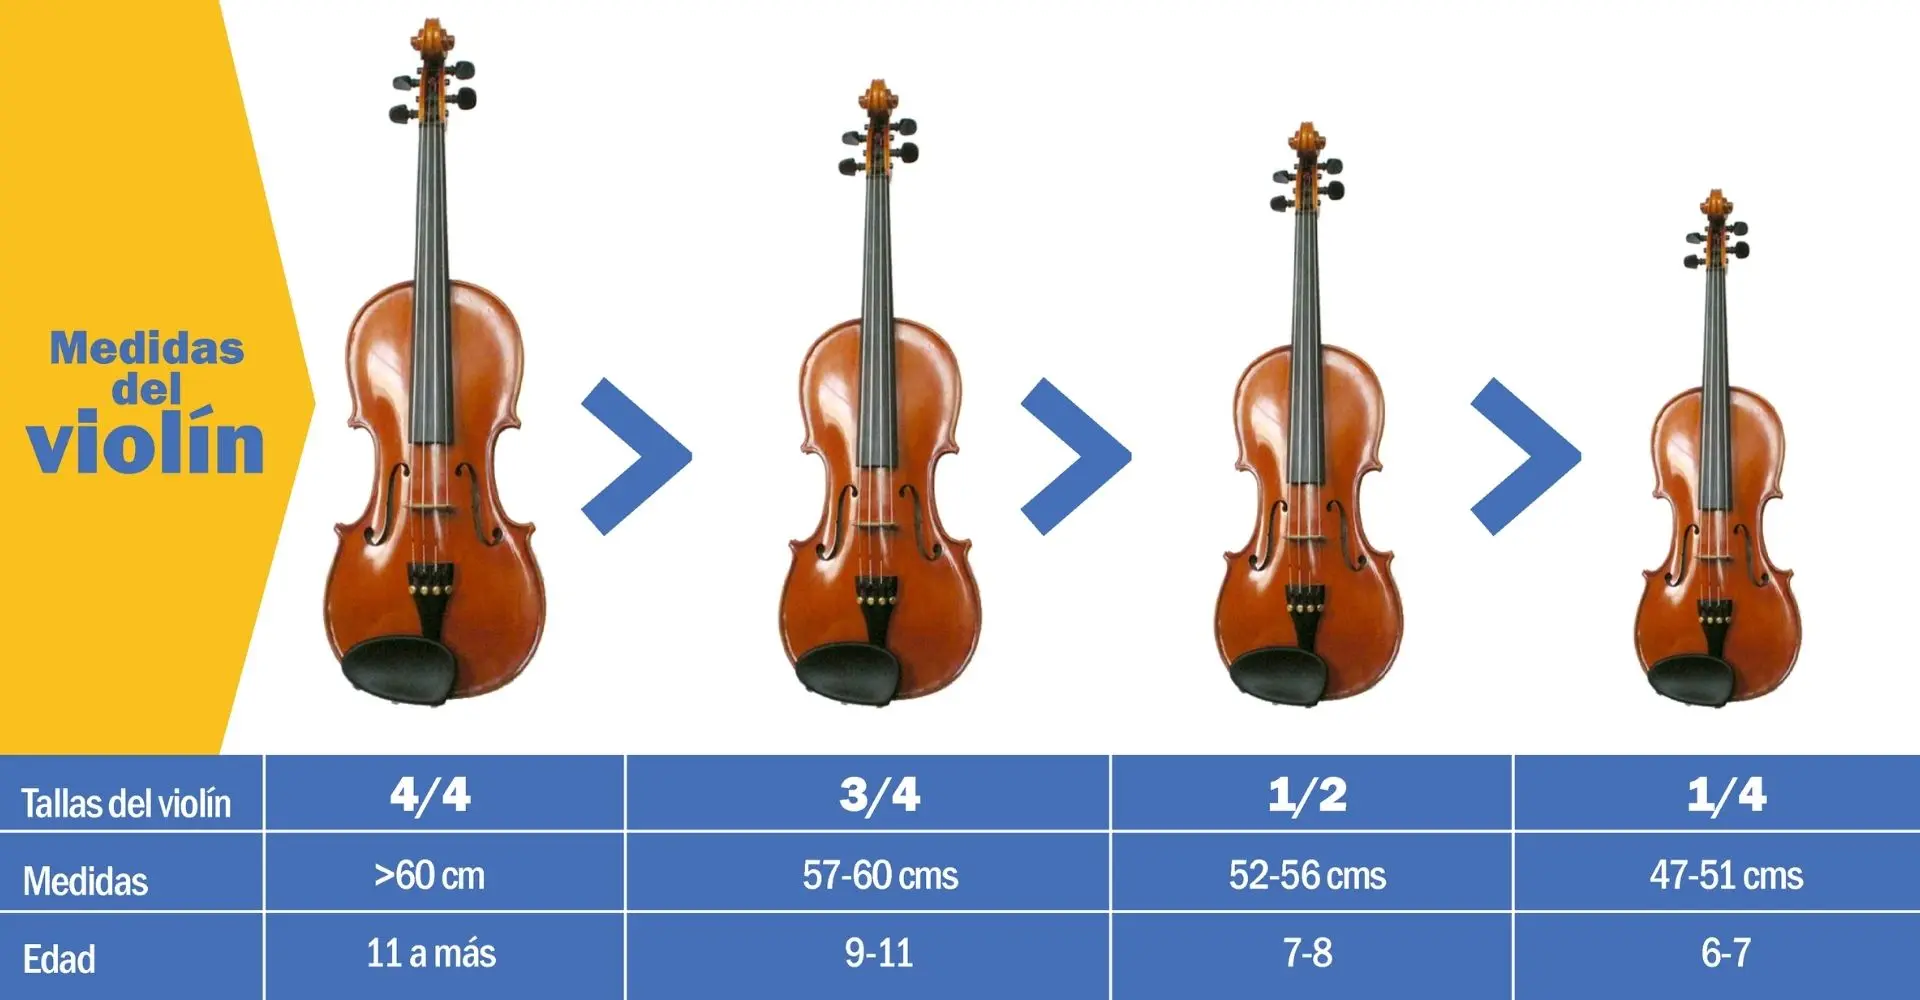 medidas de violin para niños - Cómo saber qué tamaño de violín usar